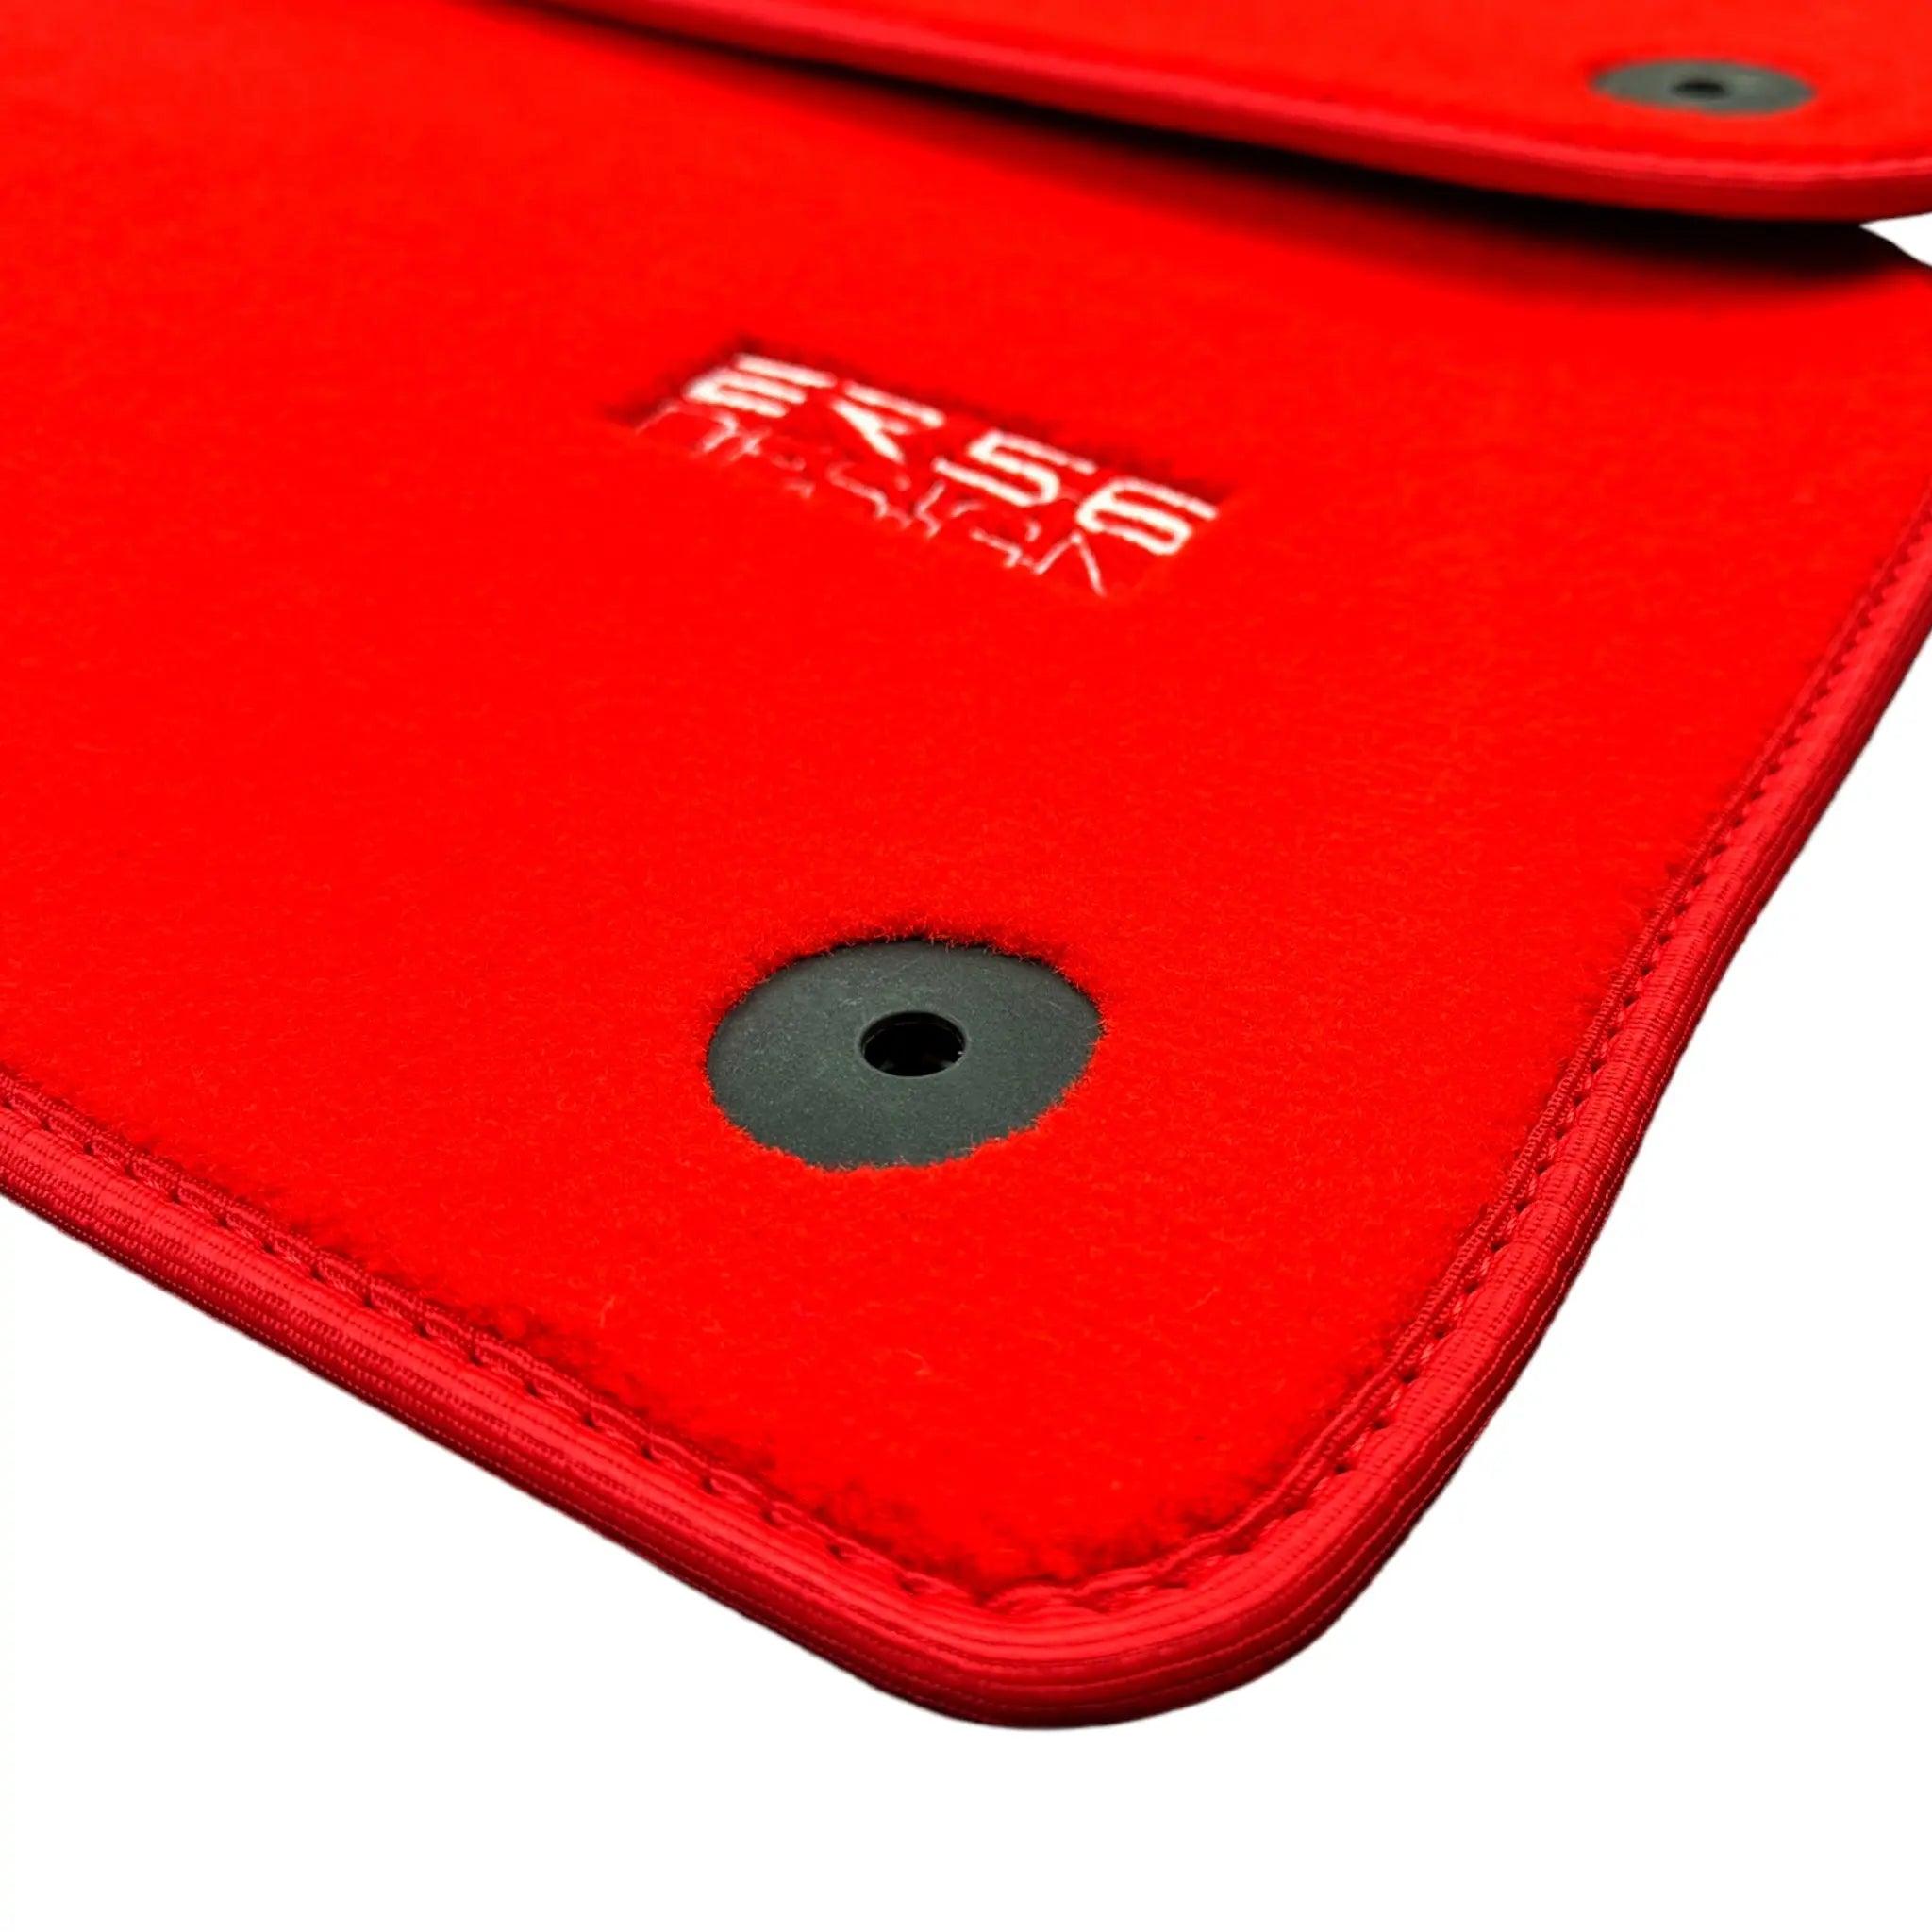 Red Floor Mats for Audi Q4 E-tron (2021-2024) | ER56 Design